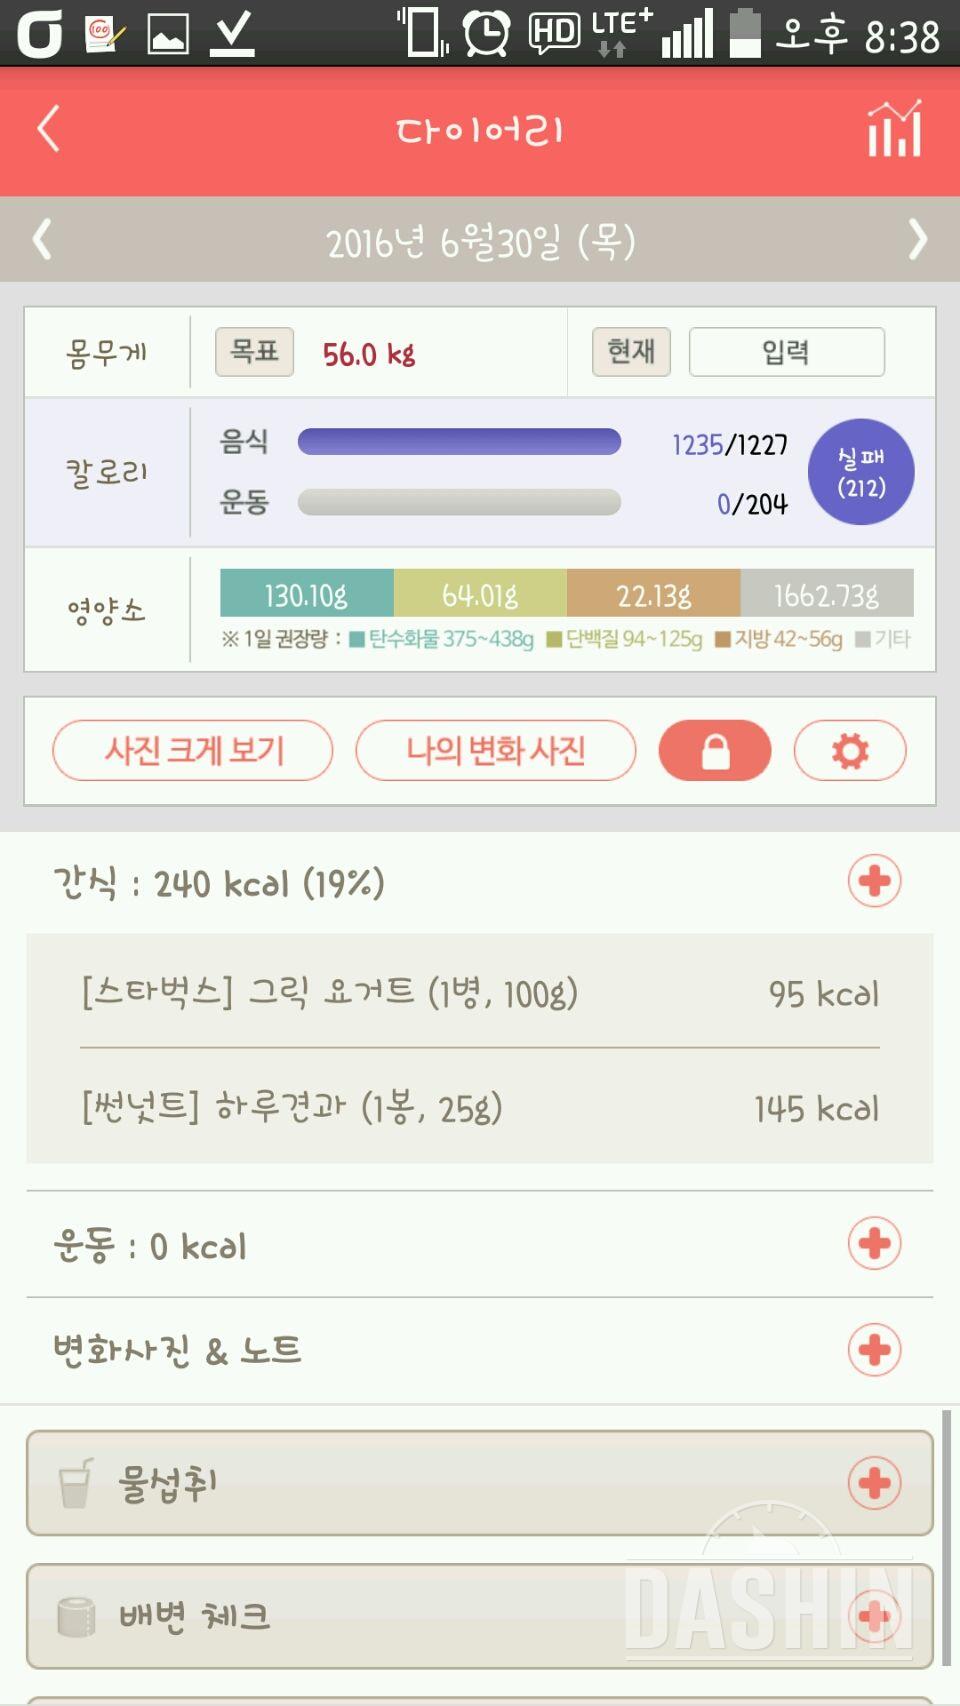 다신 5기] 11일차 운동 식단 완료!!